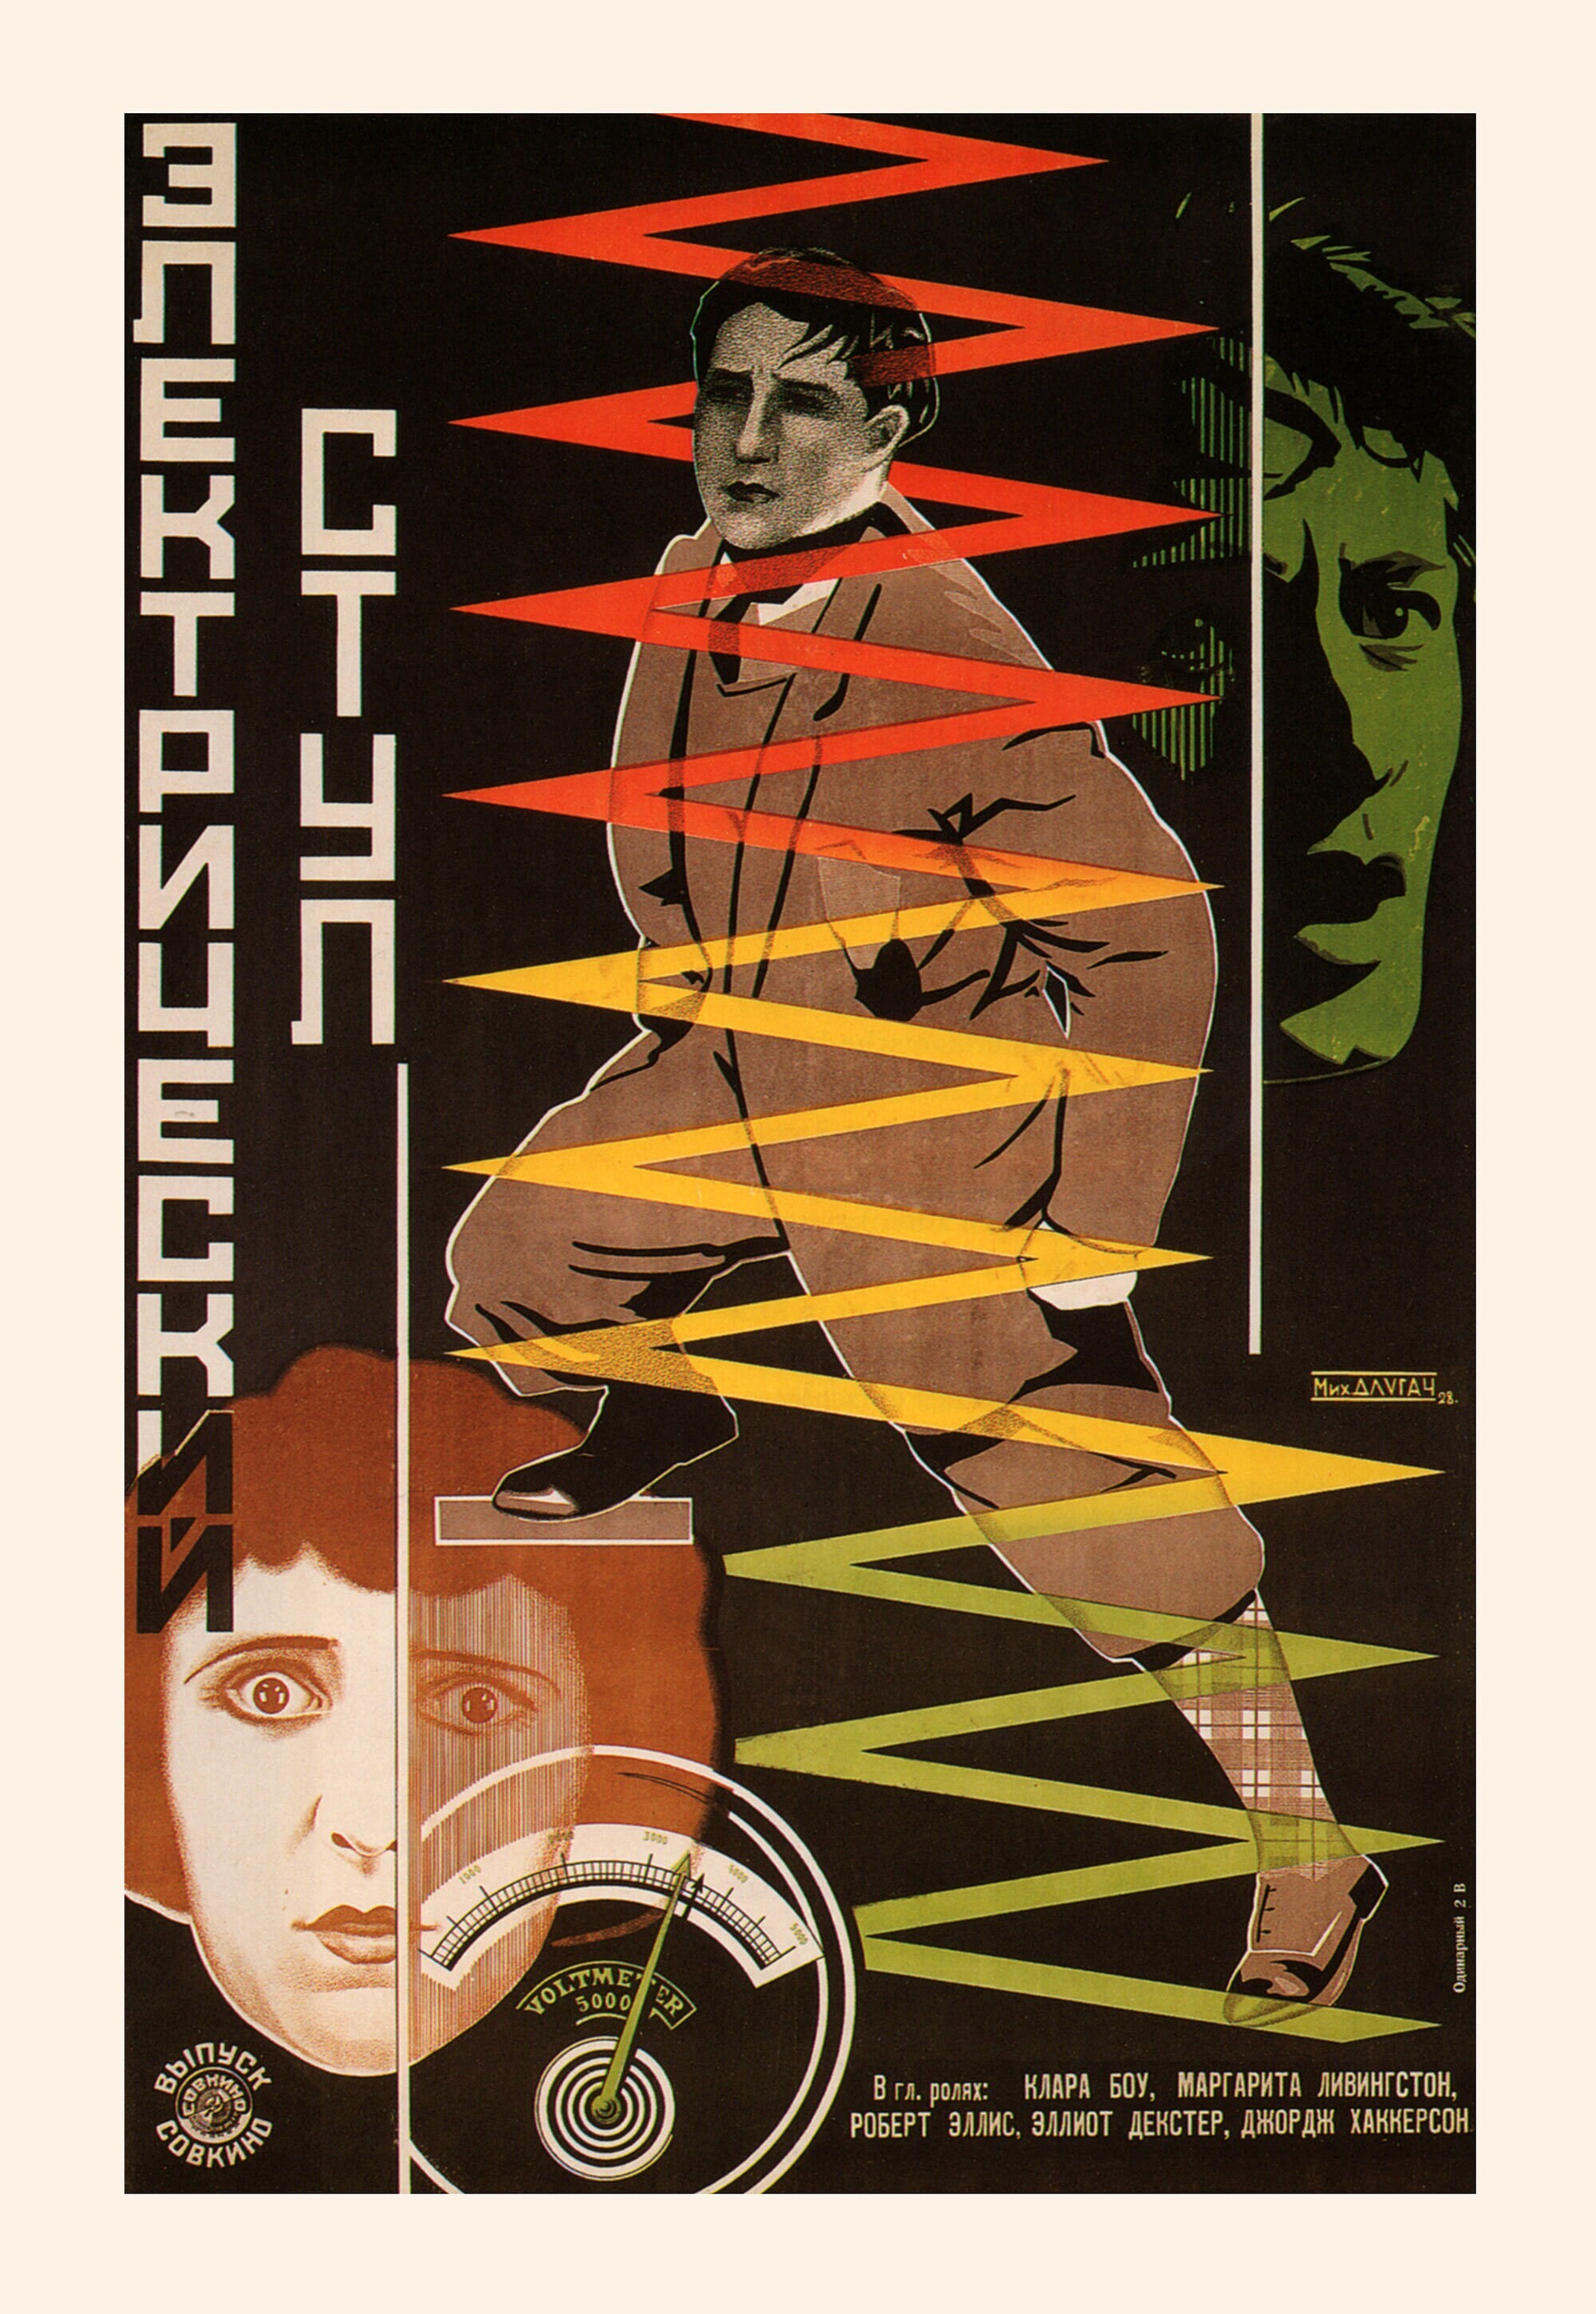 Электрический стул (Высшая мера), 1925 год, режиссёр Джеймс П. Хоган, плакат к фильму, автор Михаил Длугач (авангардное советское искусство, 1920-е)